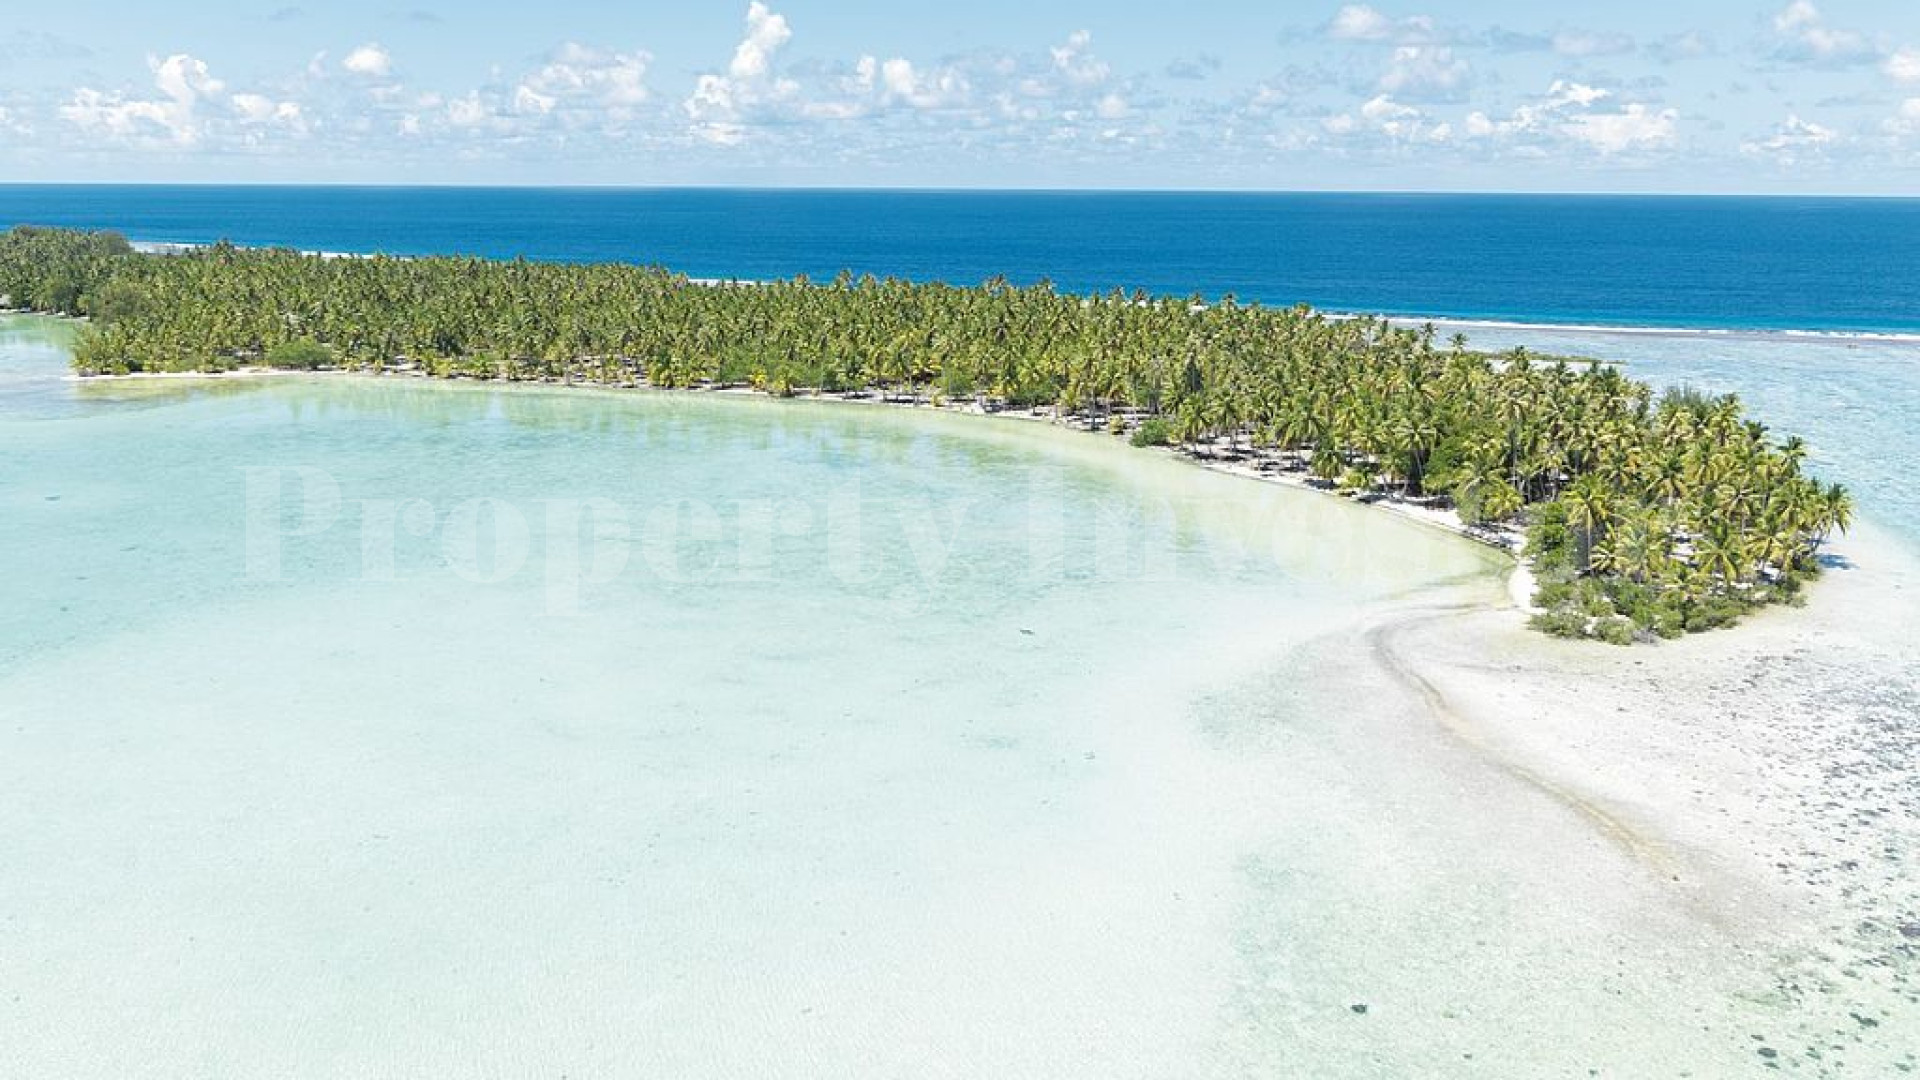 Продаётся живописный частный дикий остров 7,12 га во Французской Полинезии